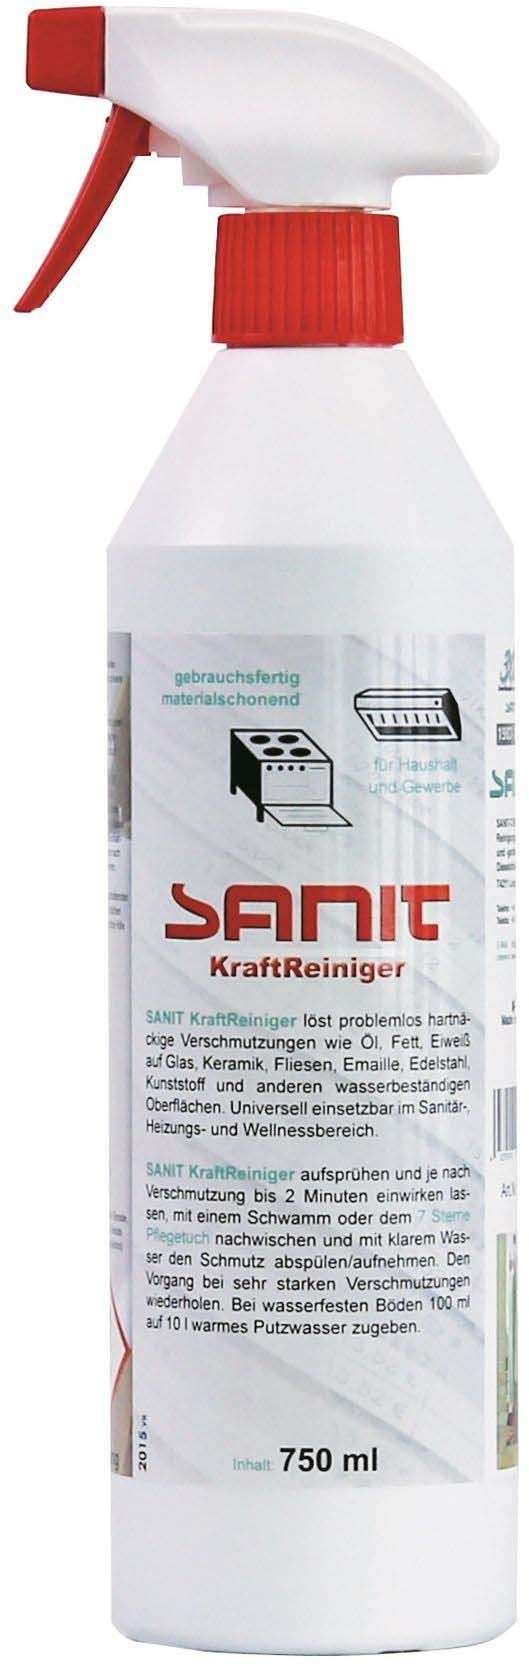 SANIT KraftReiniger power cleamer 750 ml 3009 resmi